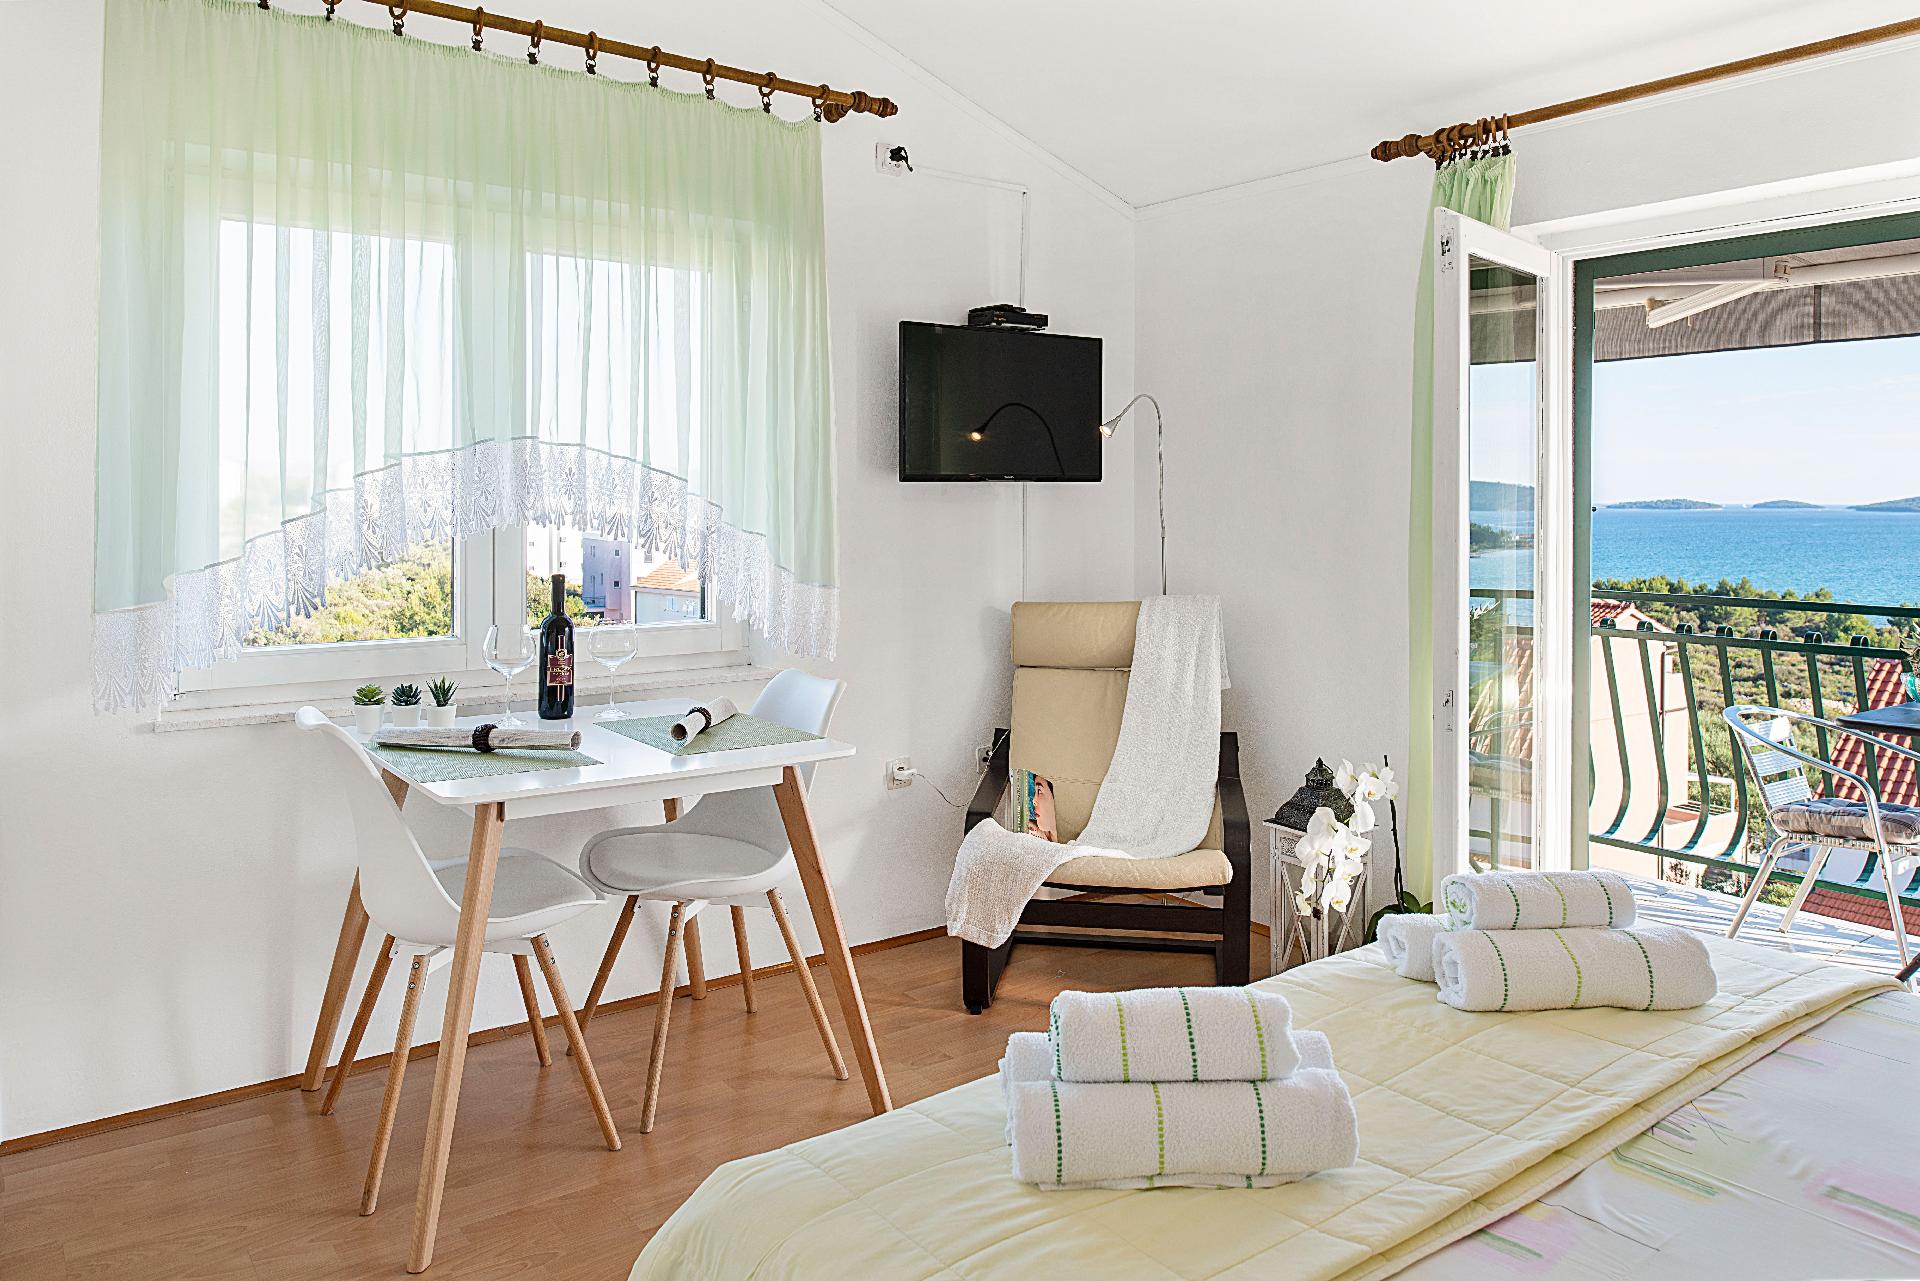 Appartement mit Balkon Ferienwohnung in Kroatien